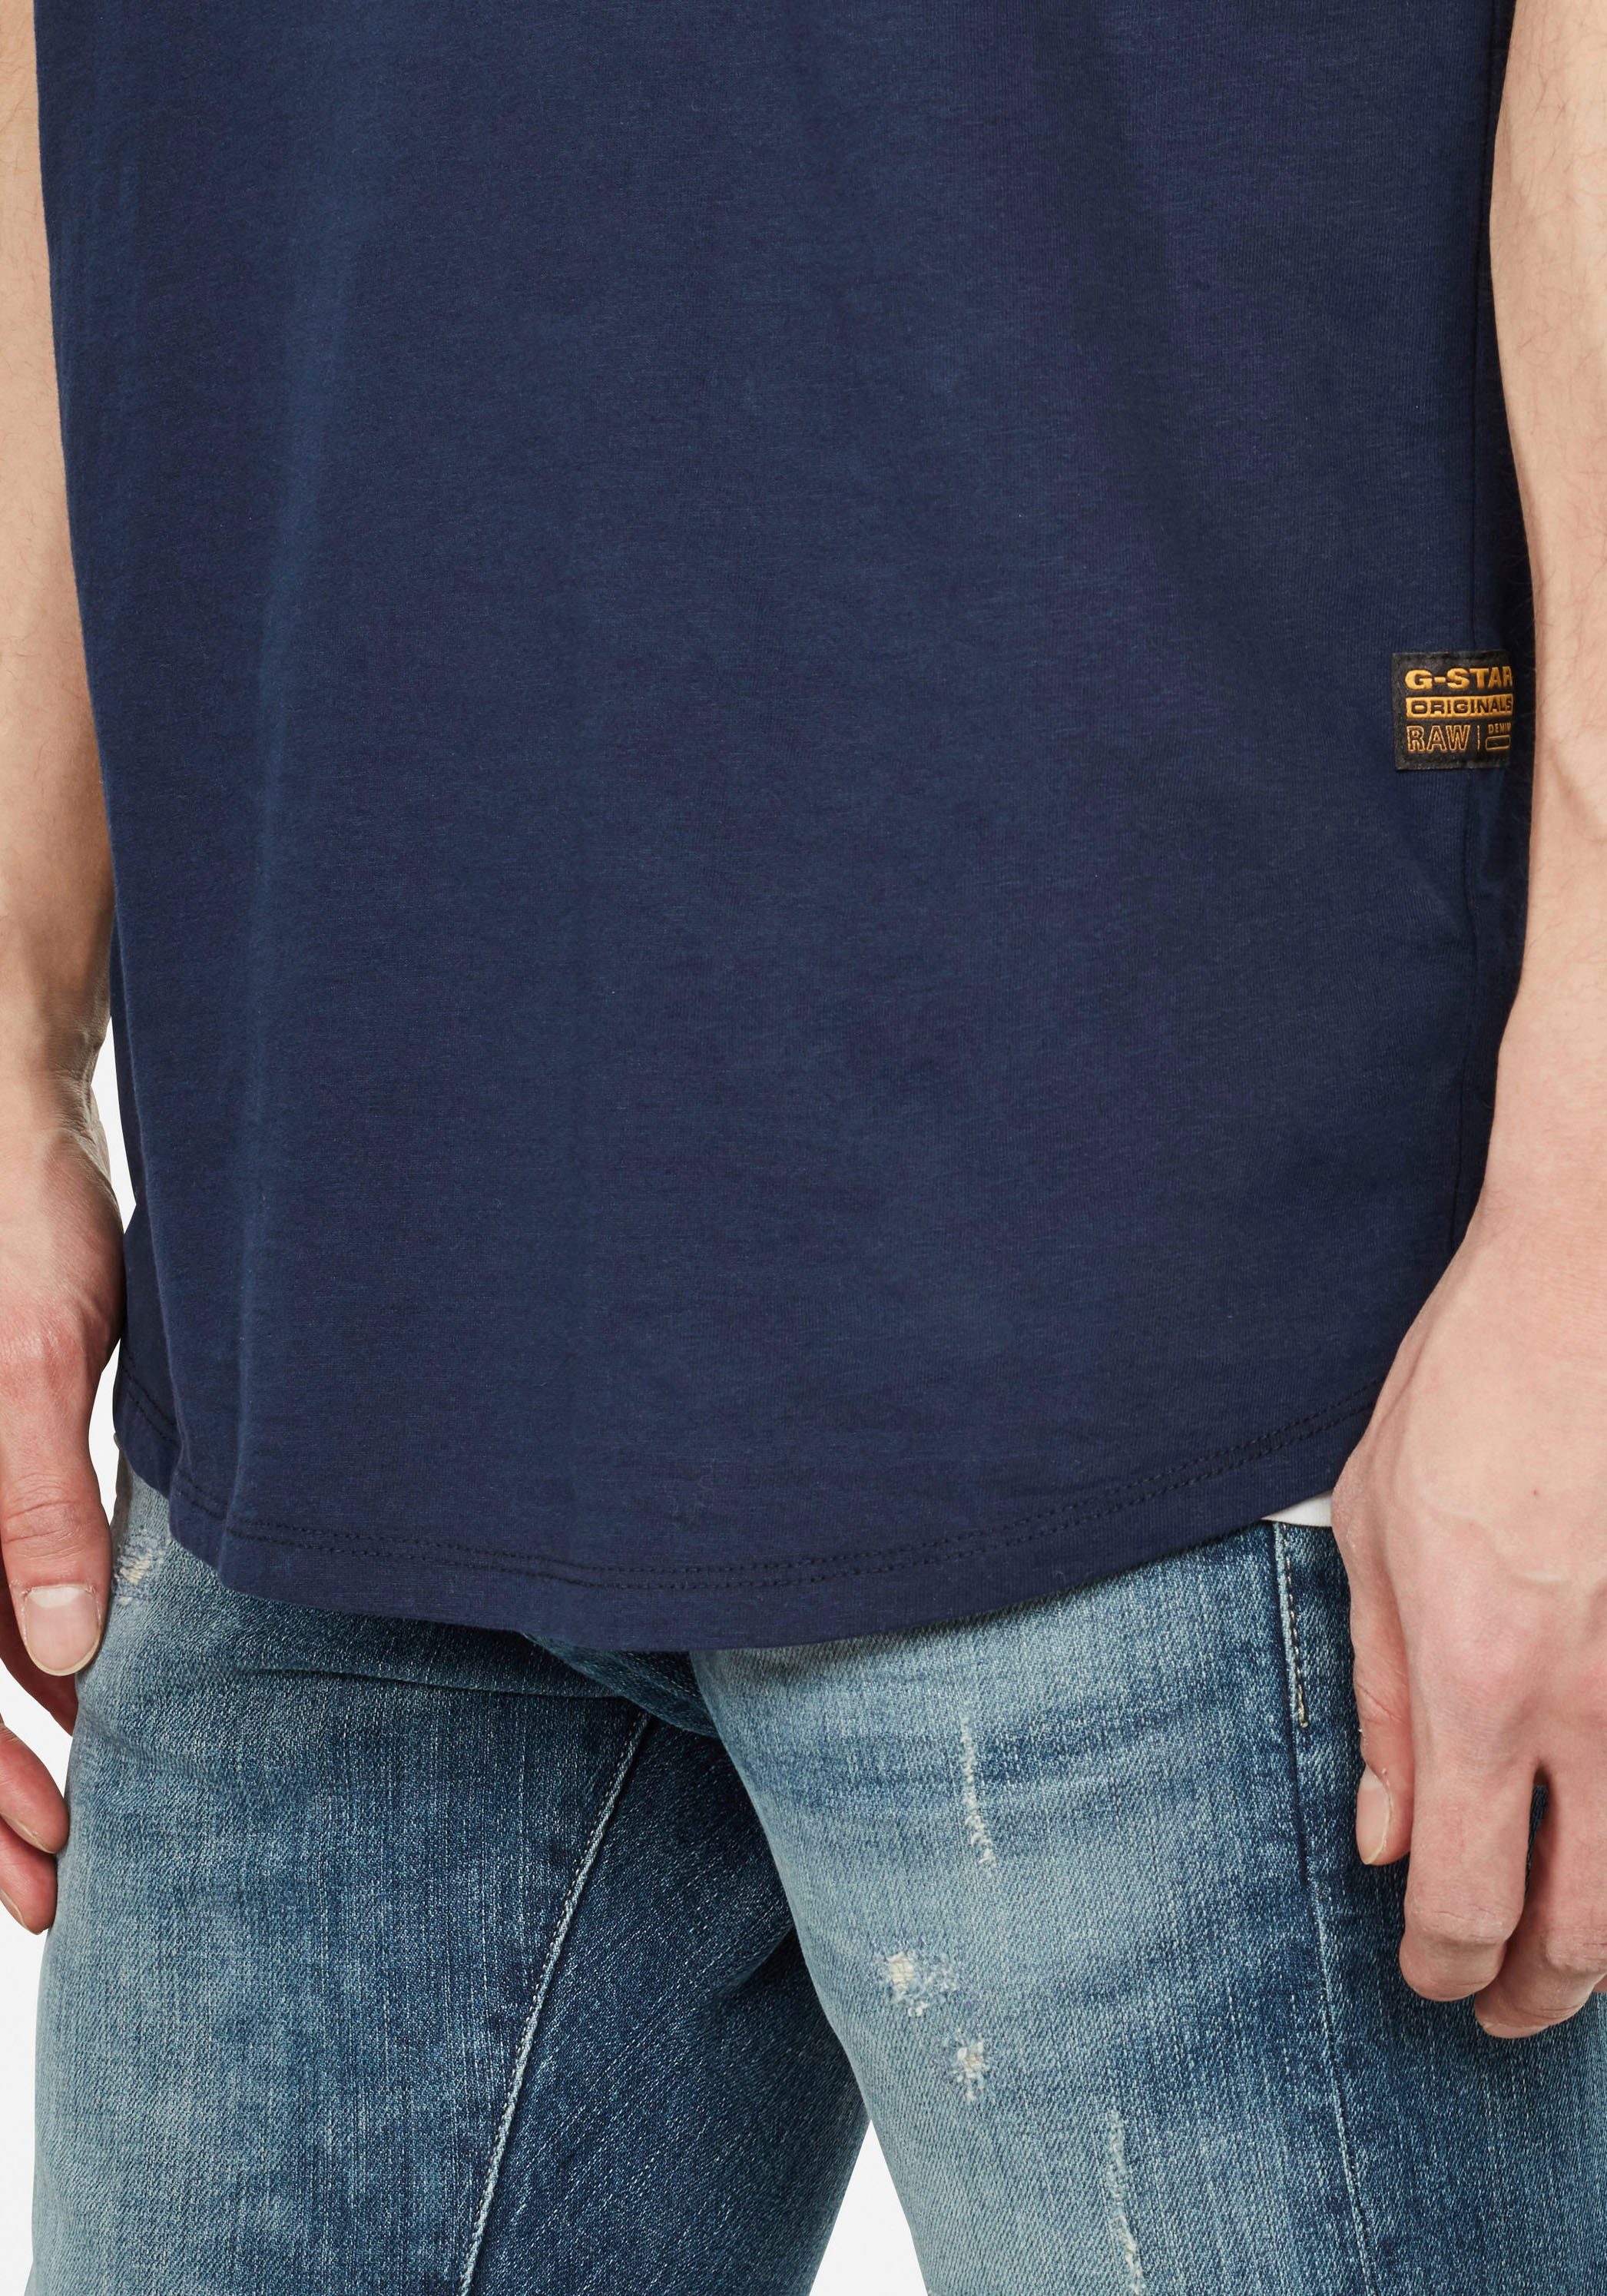 G-Star RAW T-Shirt Lash navy-meliert Stitching Logo mit kleinem